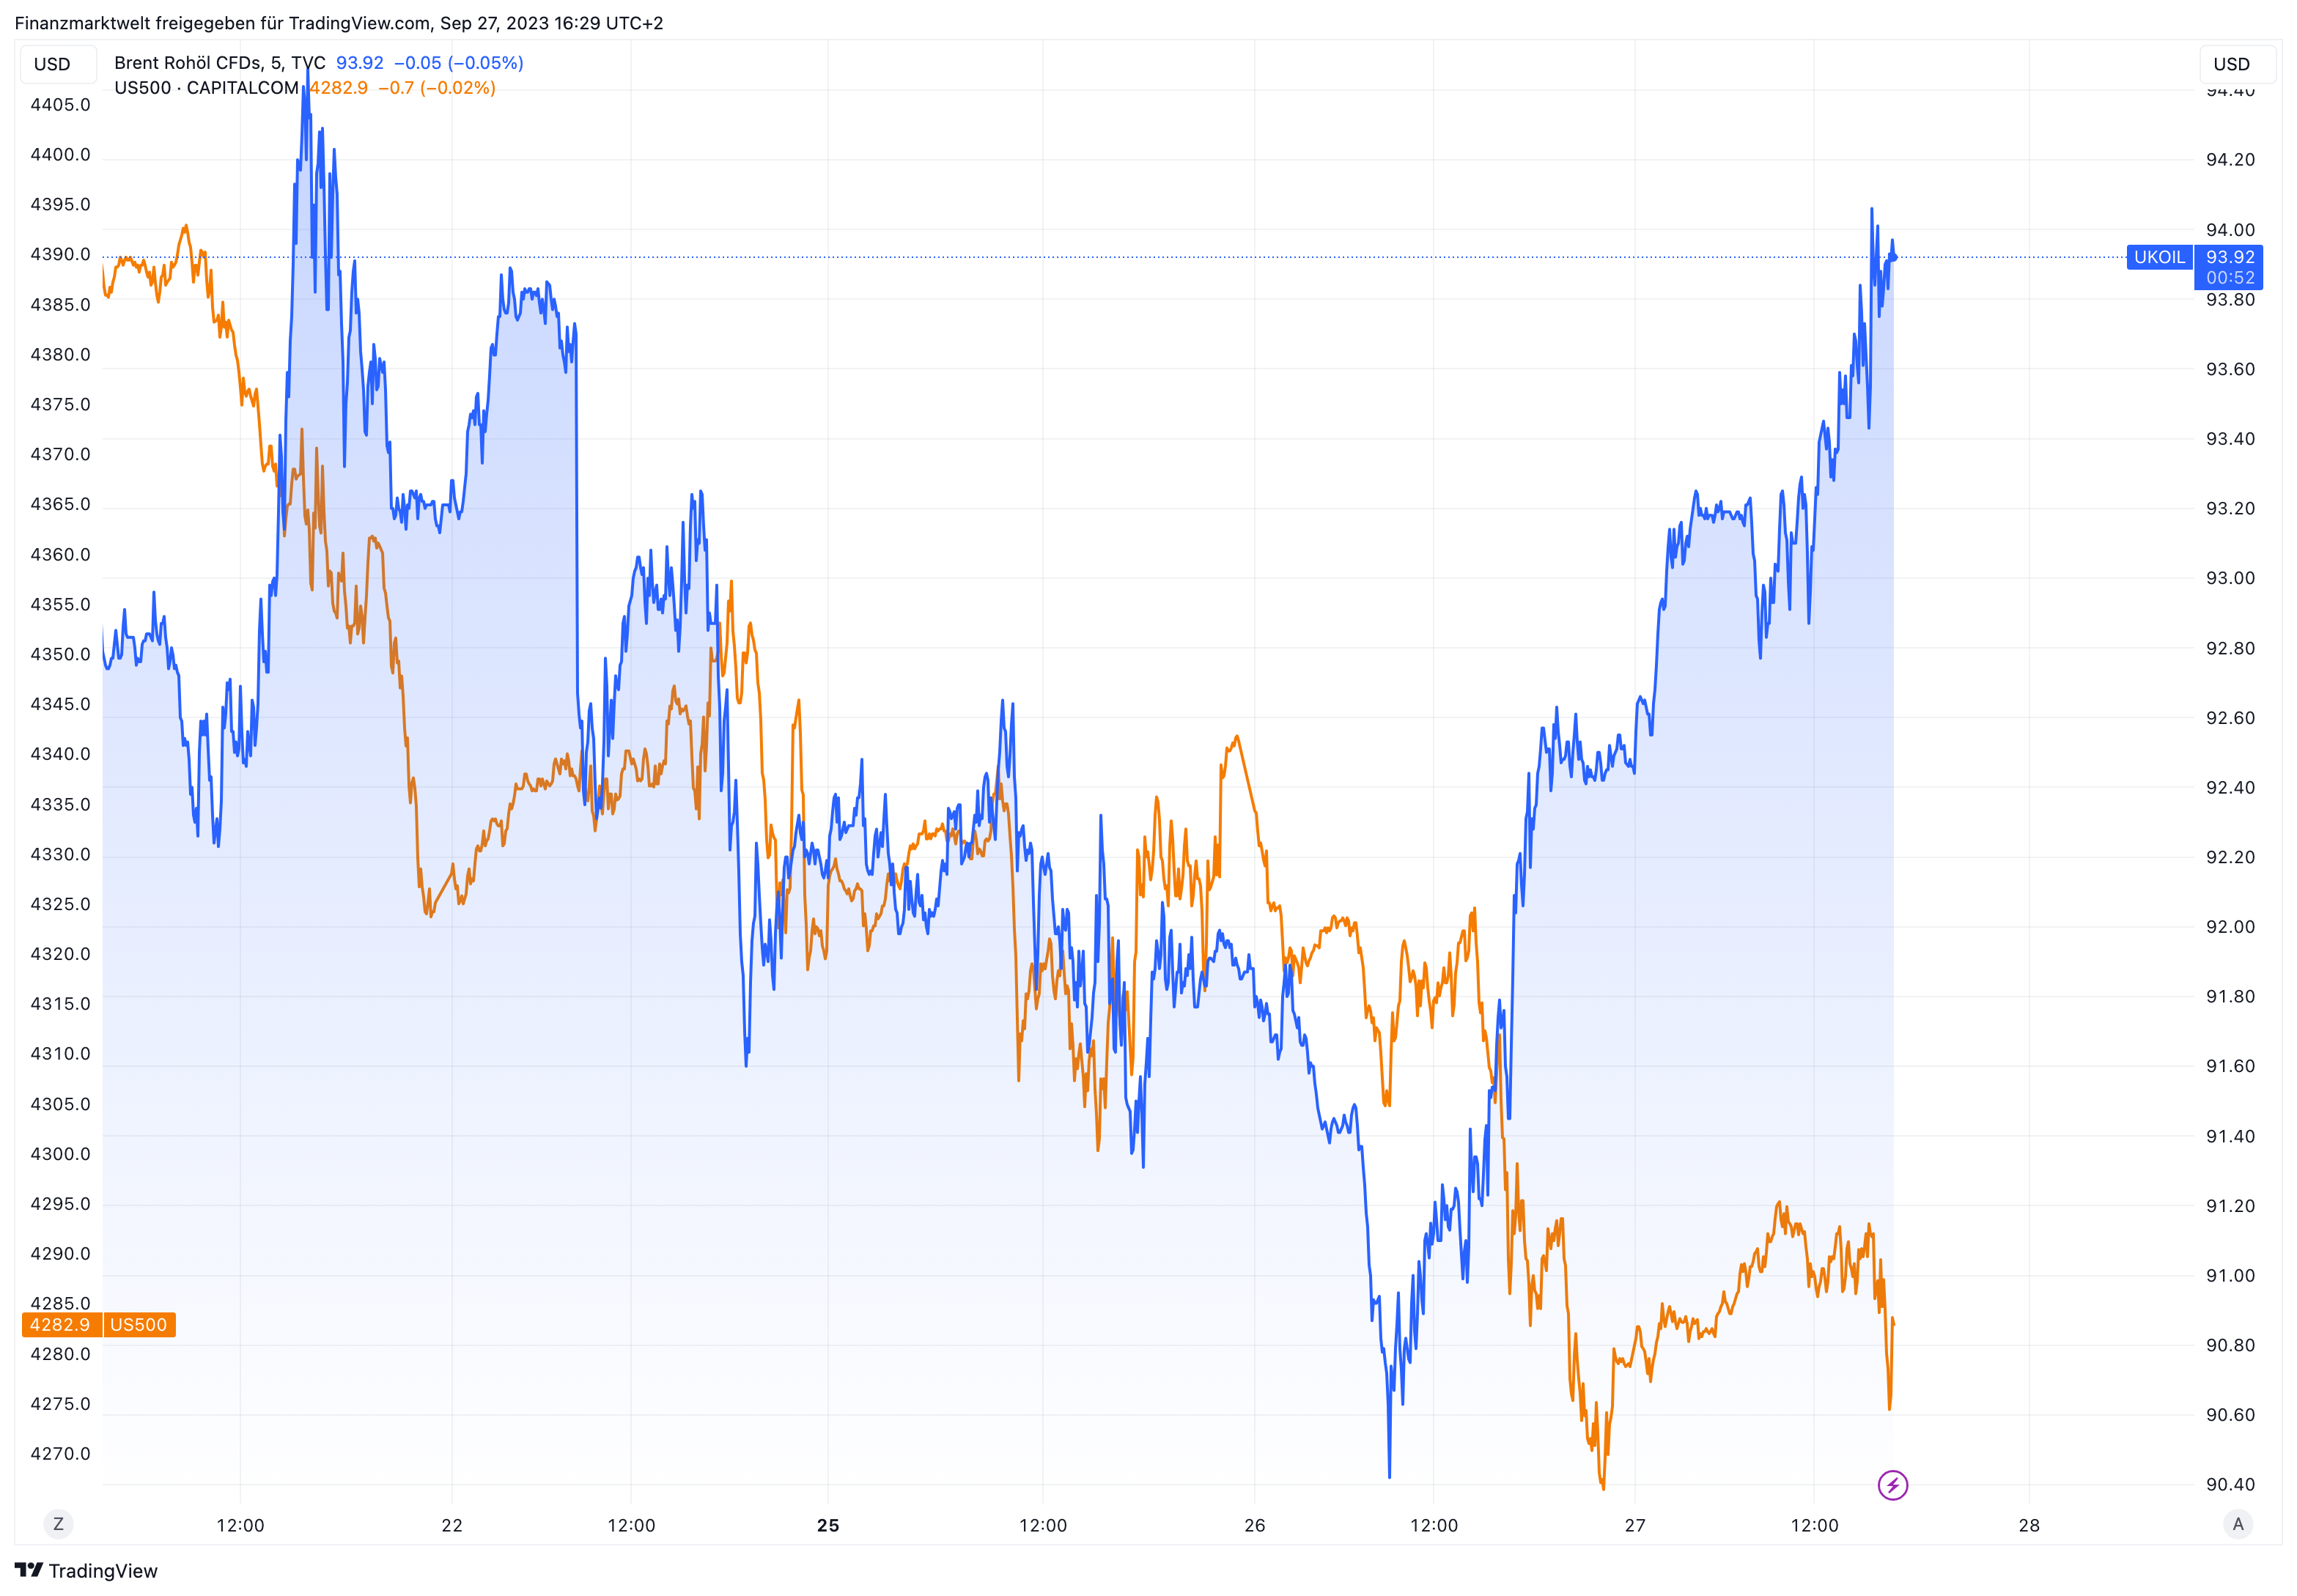 Ölpreis-Entwicklung im Vergleich zum S&P 500